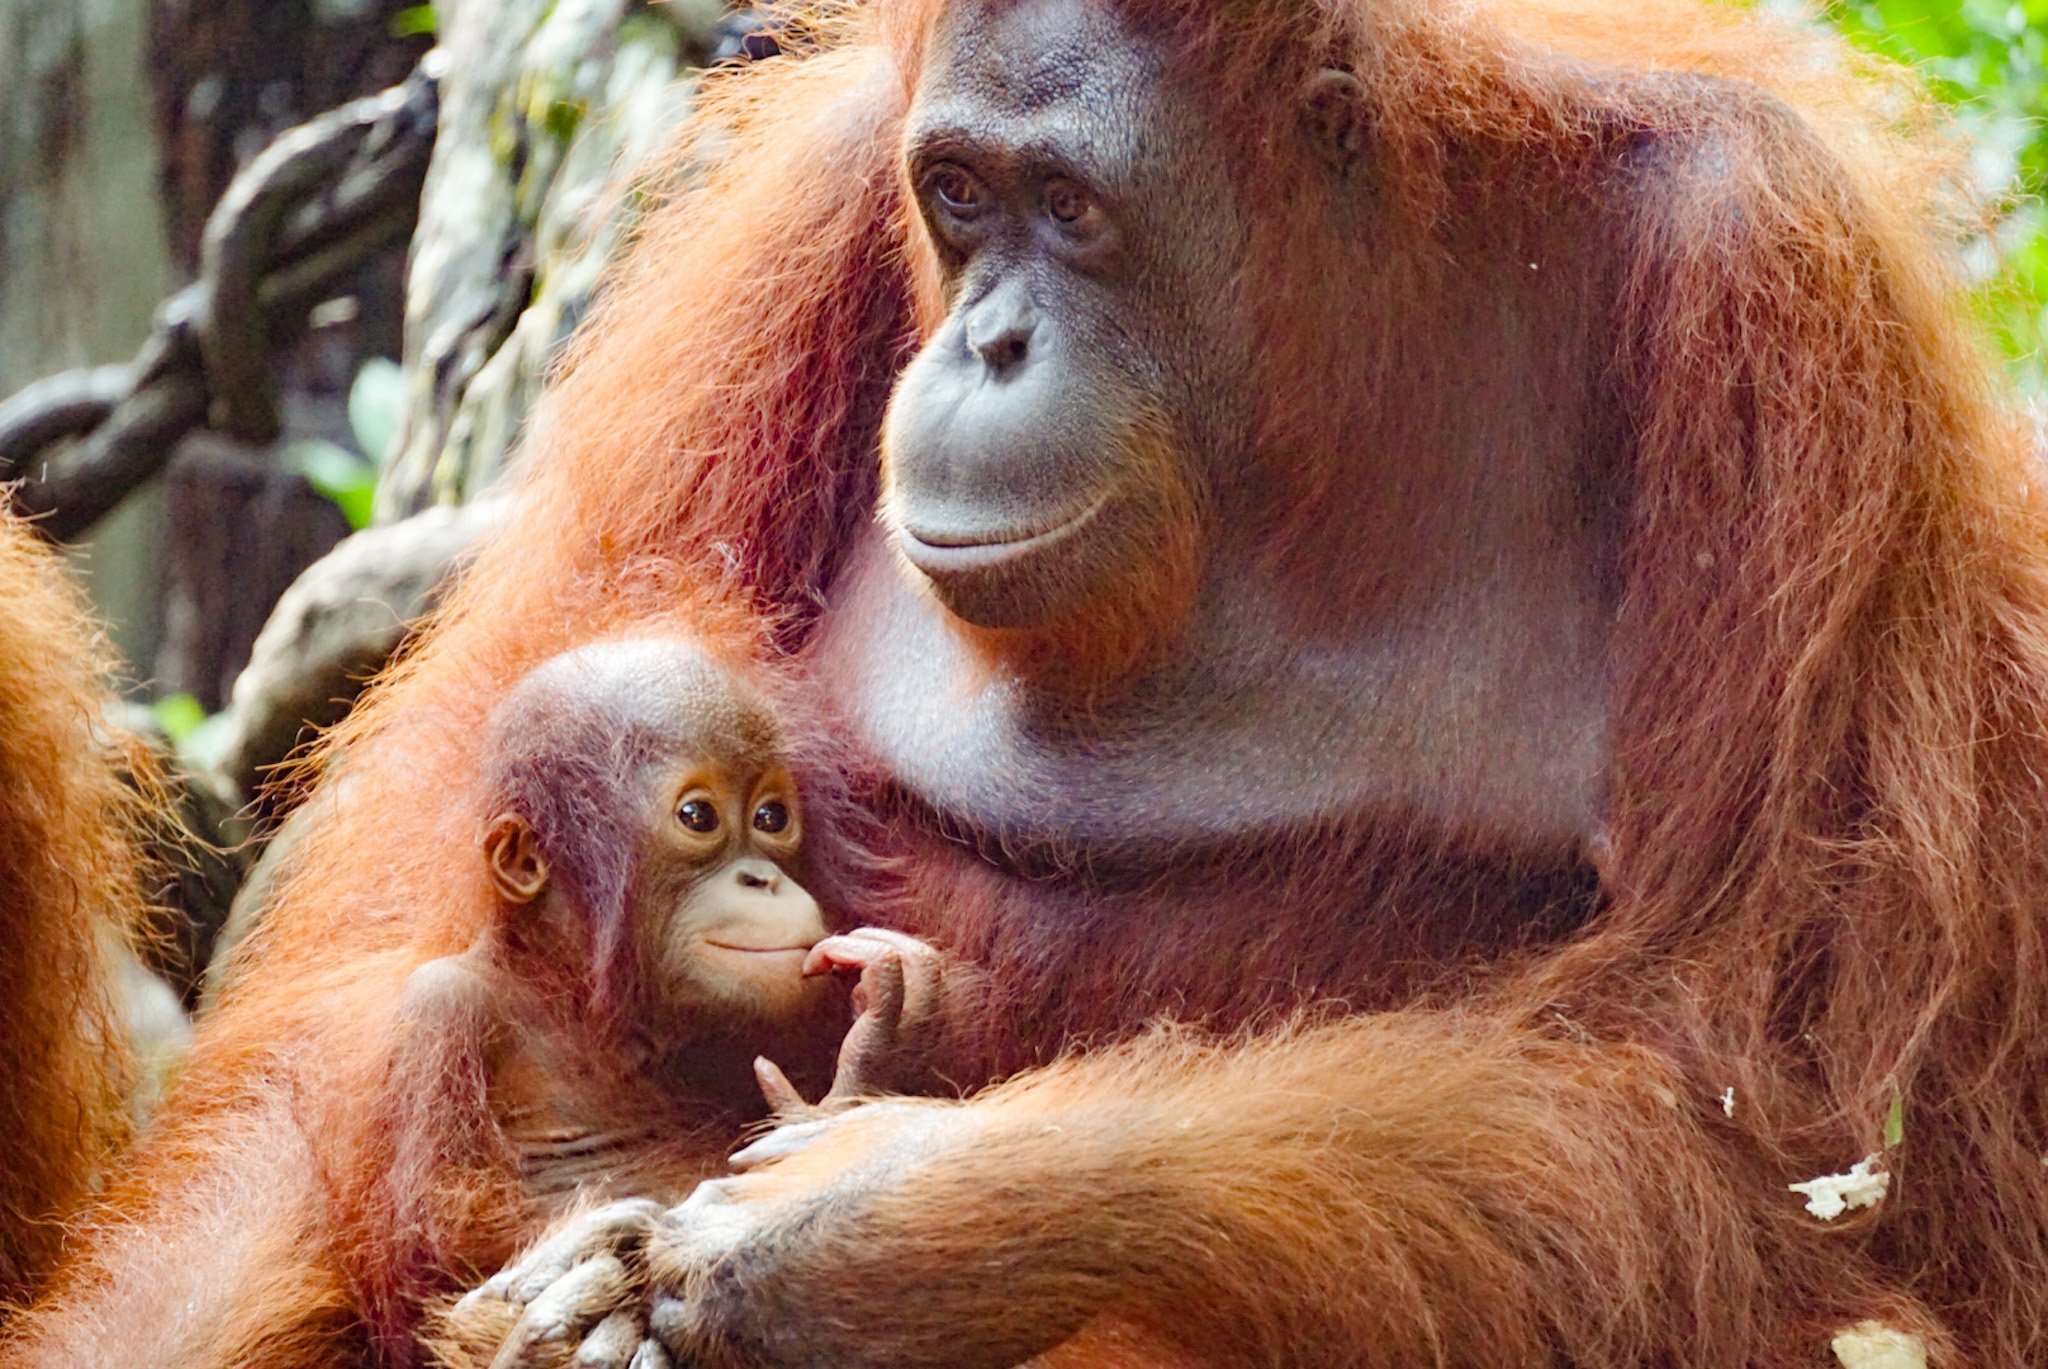 Mum and baby orangutan